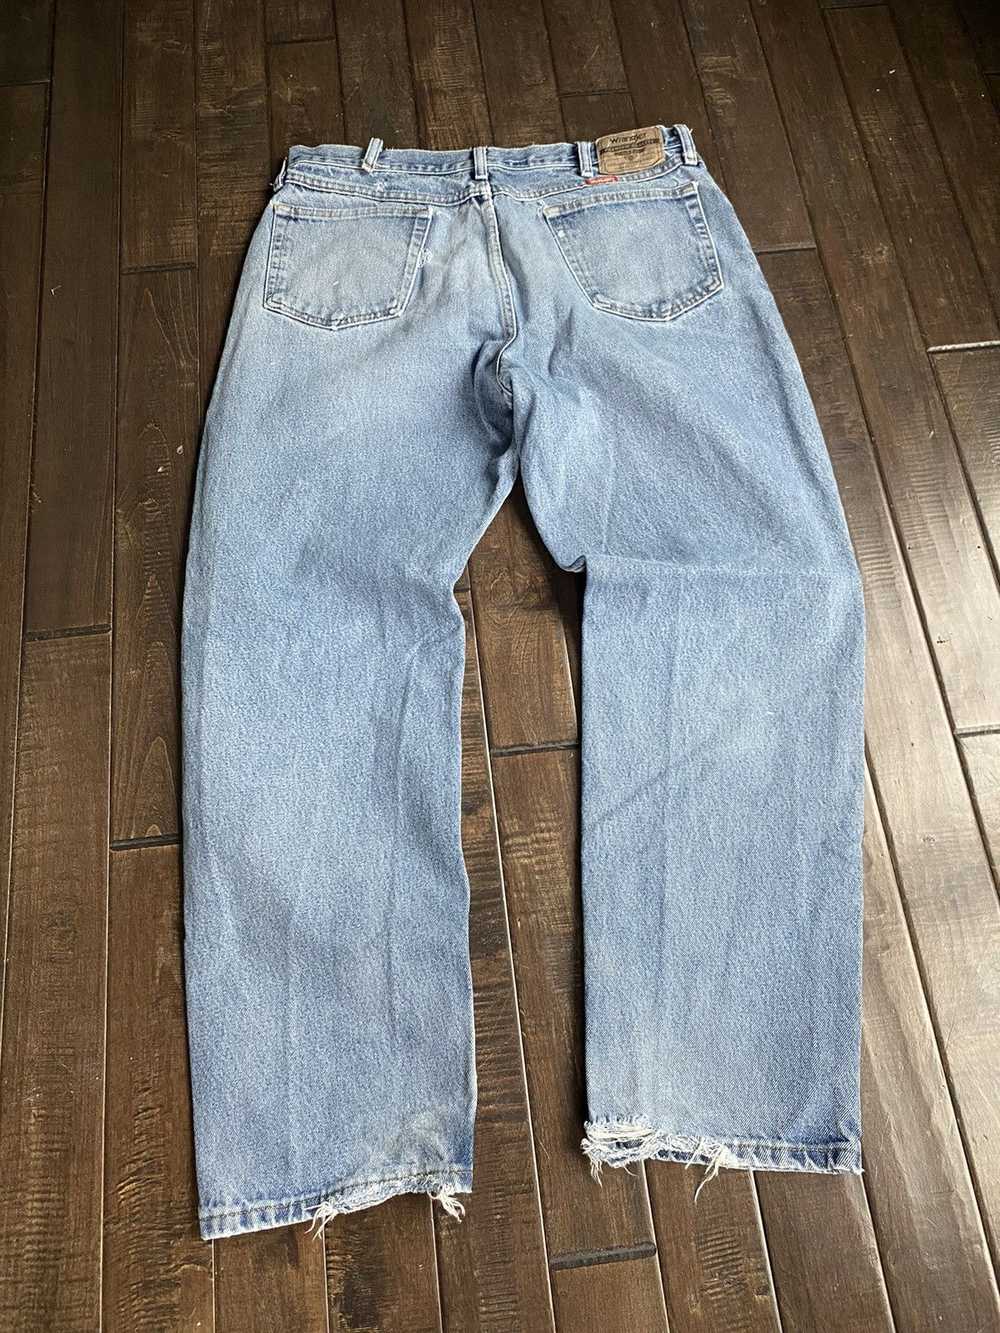 Wrangler vintage distressed wrangler jeans - image 6